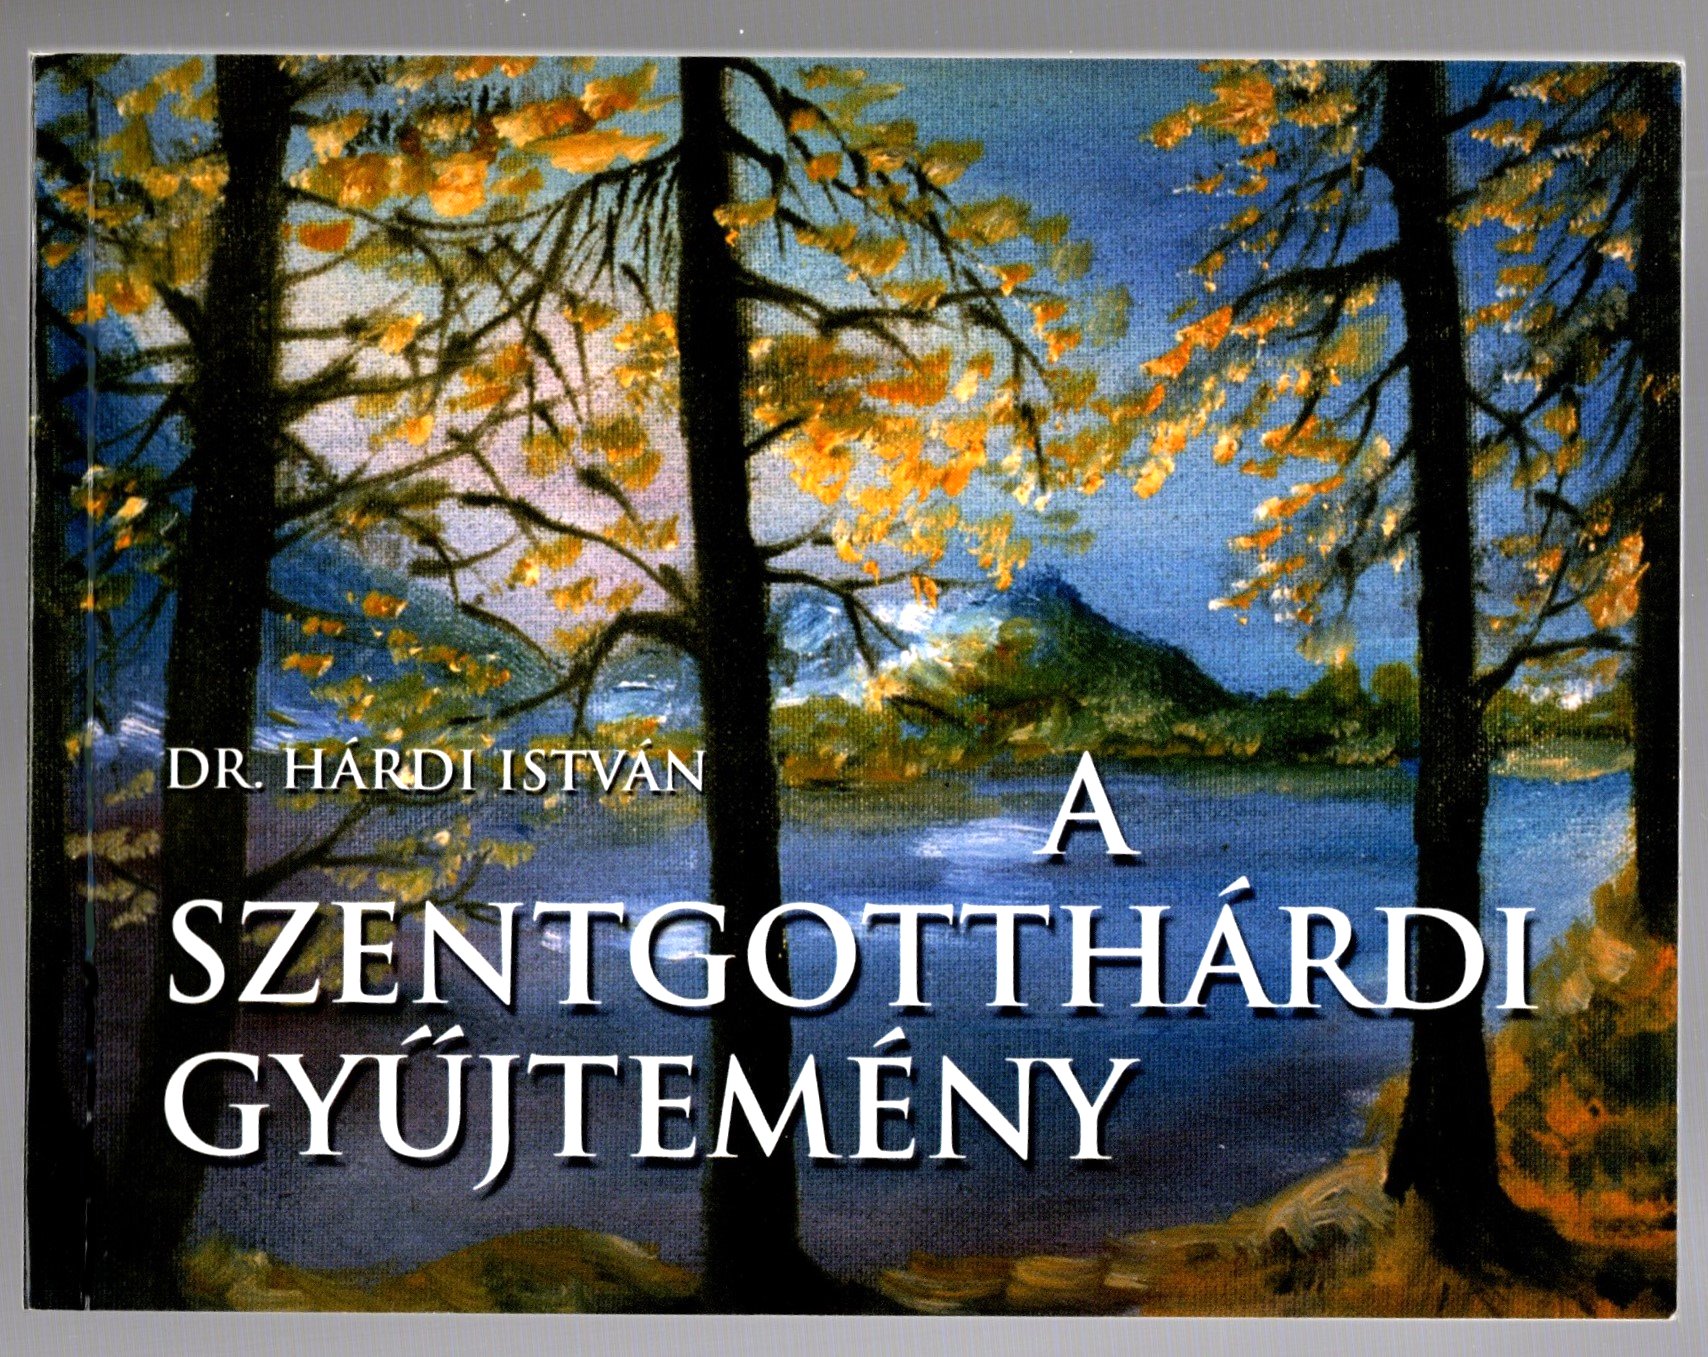 Image for Szentgotthardi Gyujtemeny, a :  A Szentgotthard Art Collection